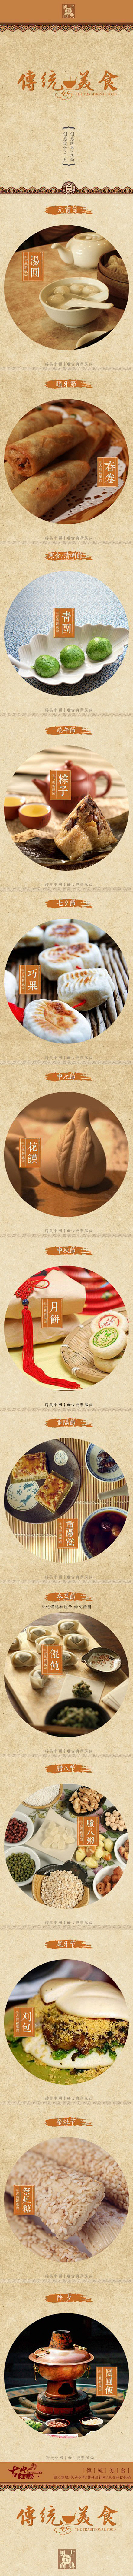 悉数传统节日背后的美食文化——中国传统节...